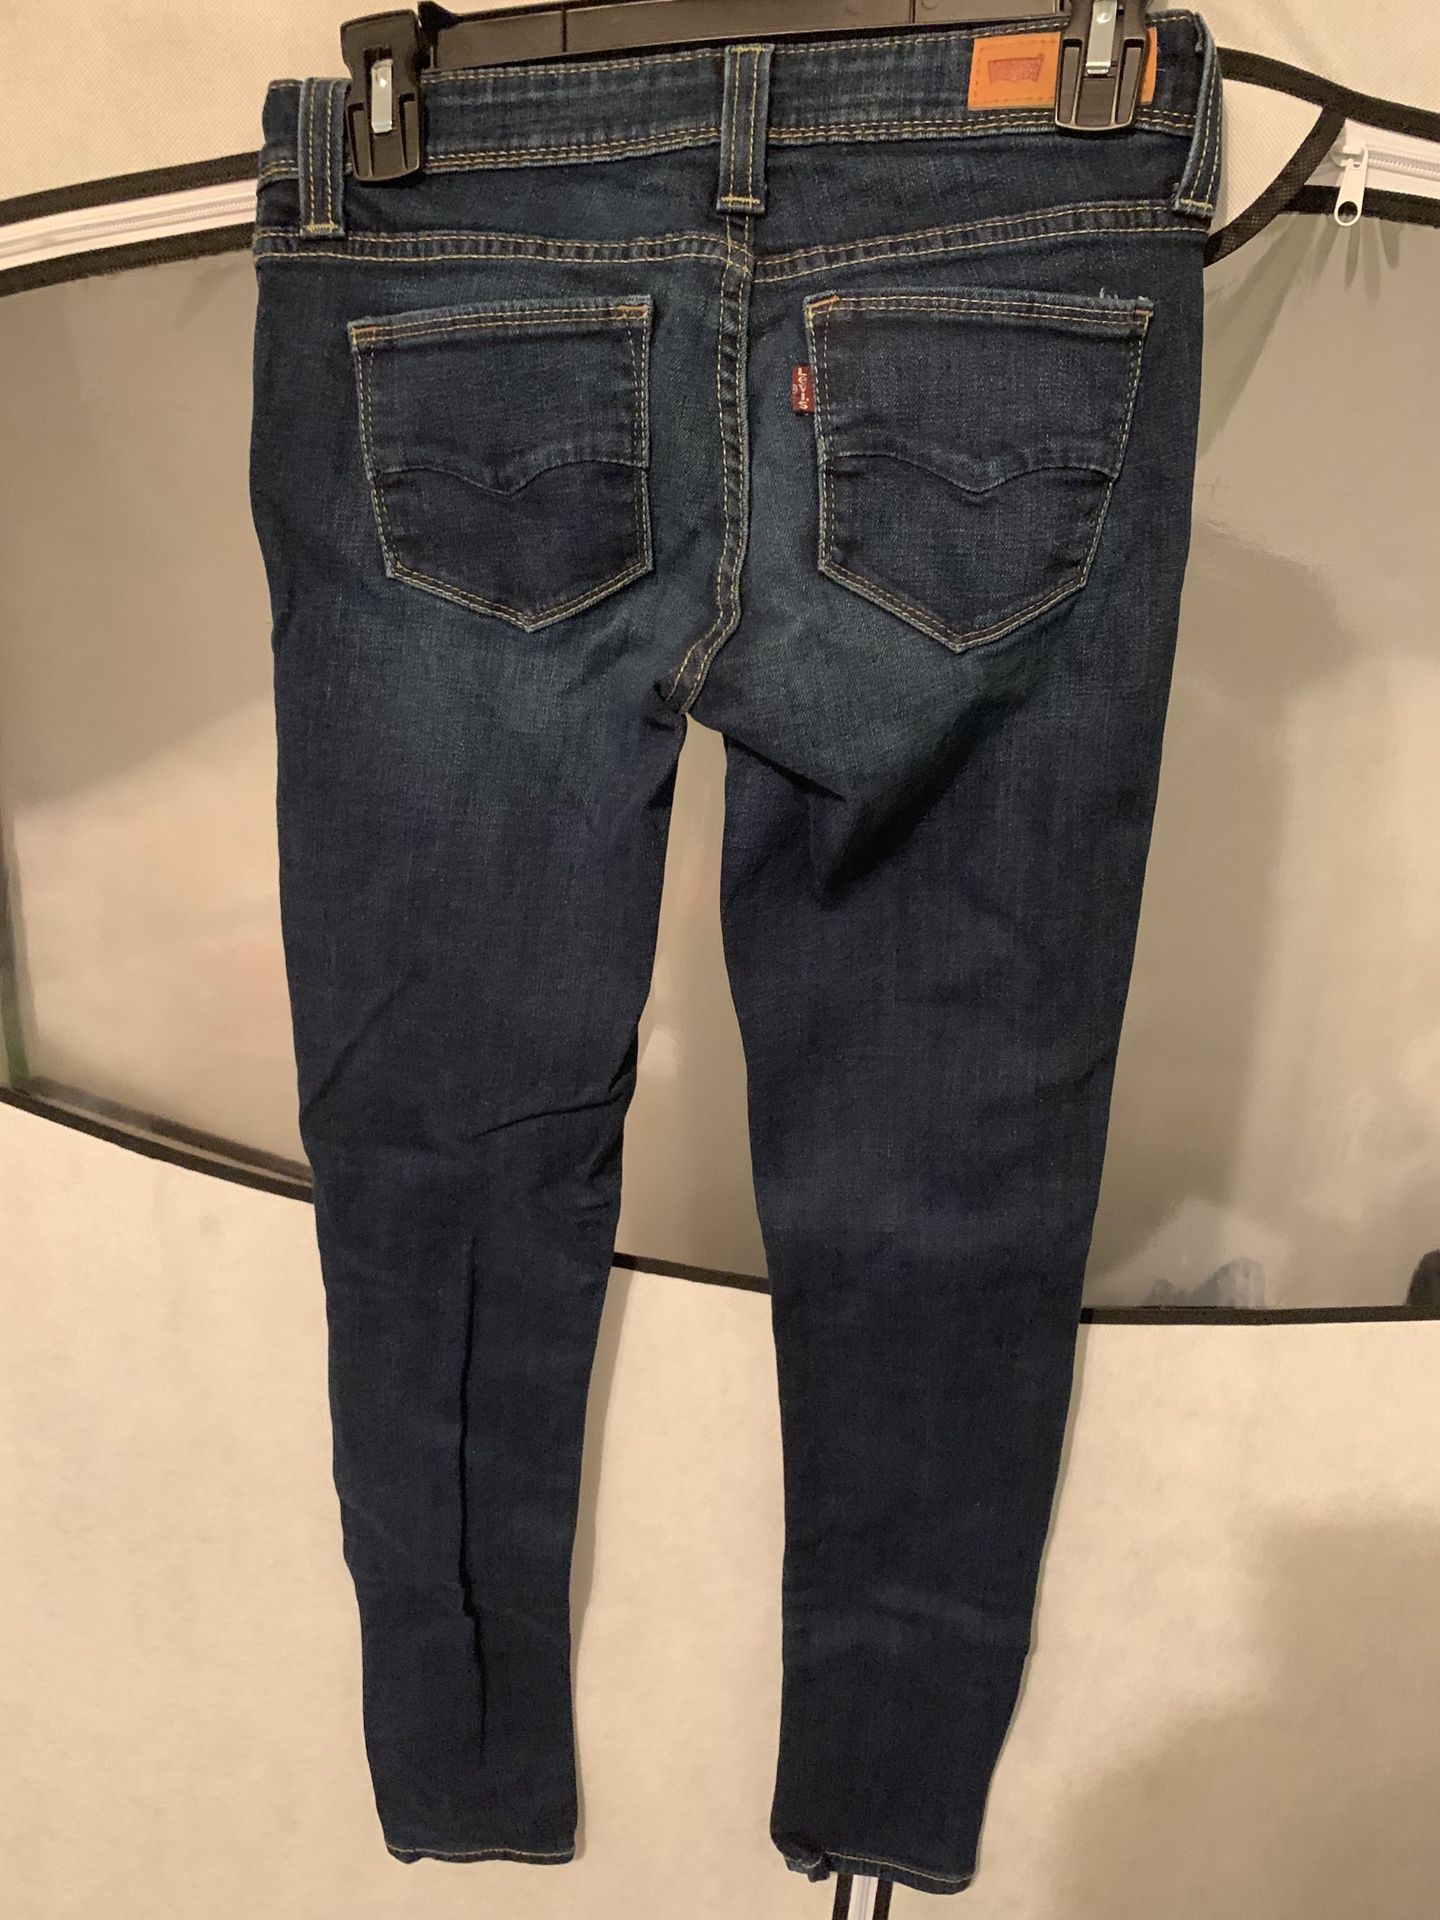 Levi Jeans Size 3M